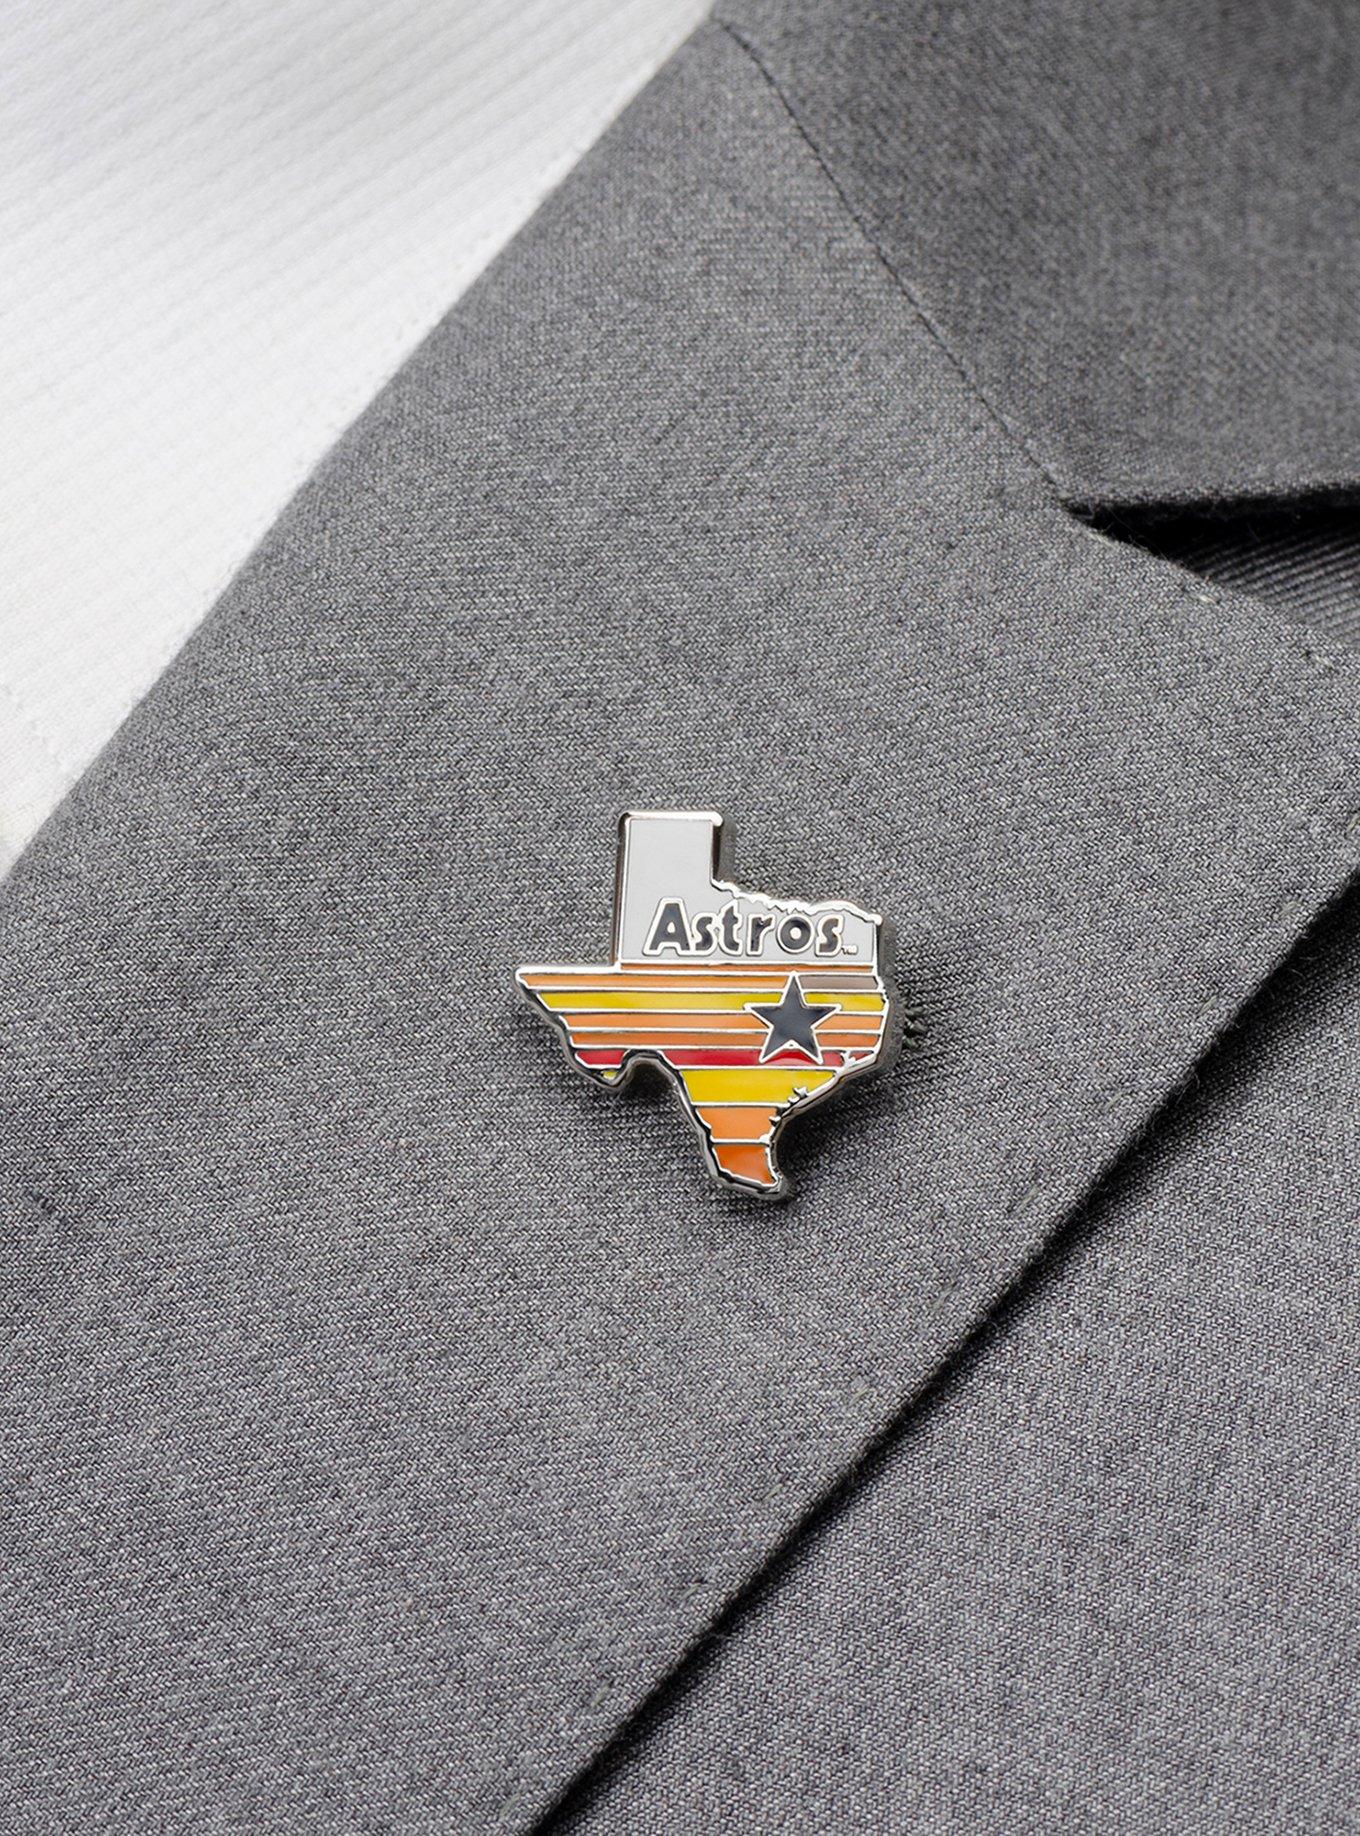 Pins Houston Astros Vintage Retro Logo Pin